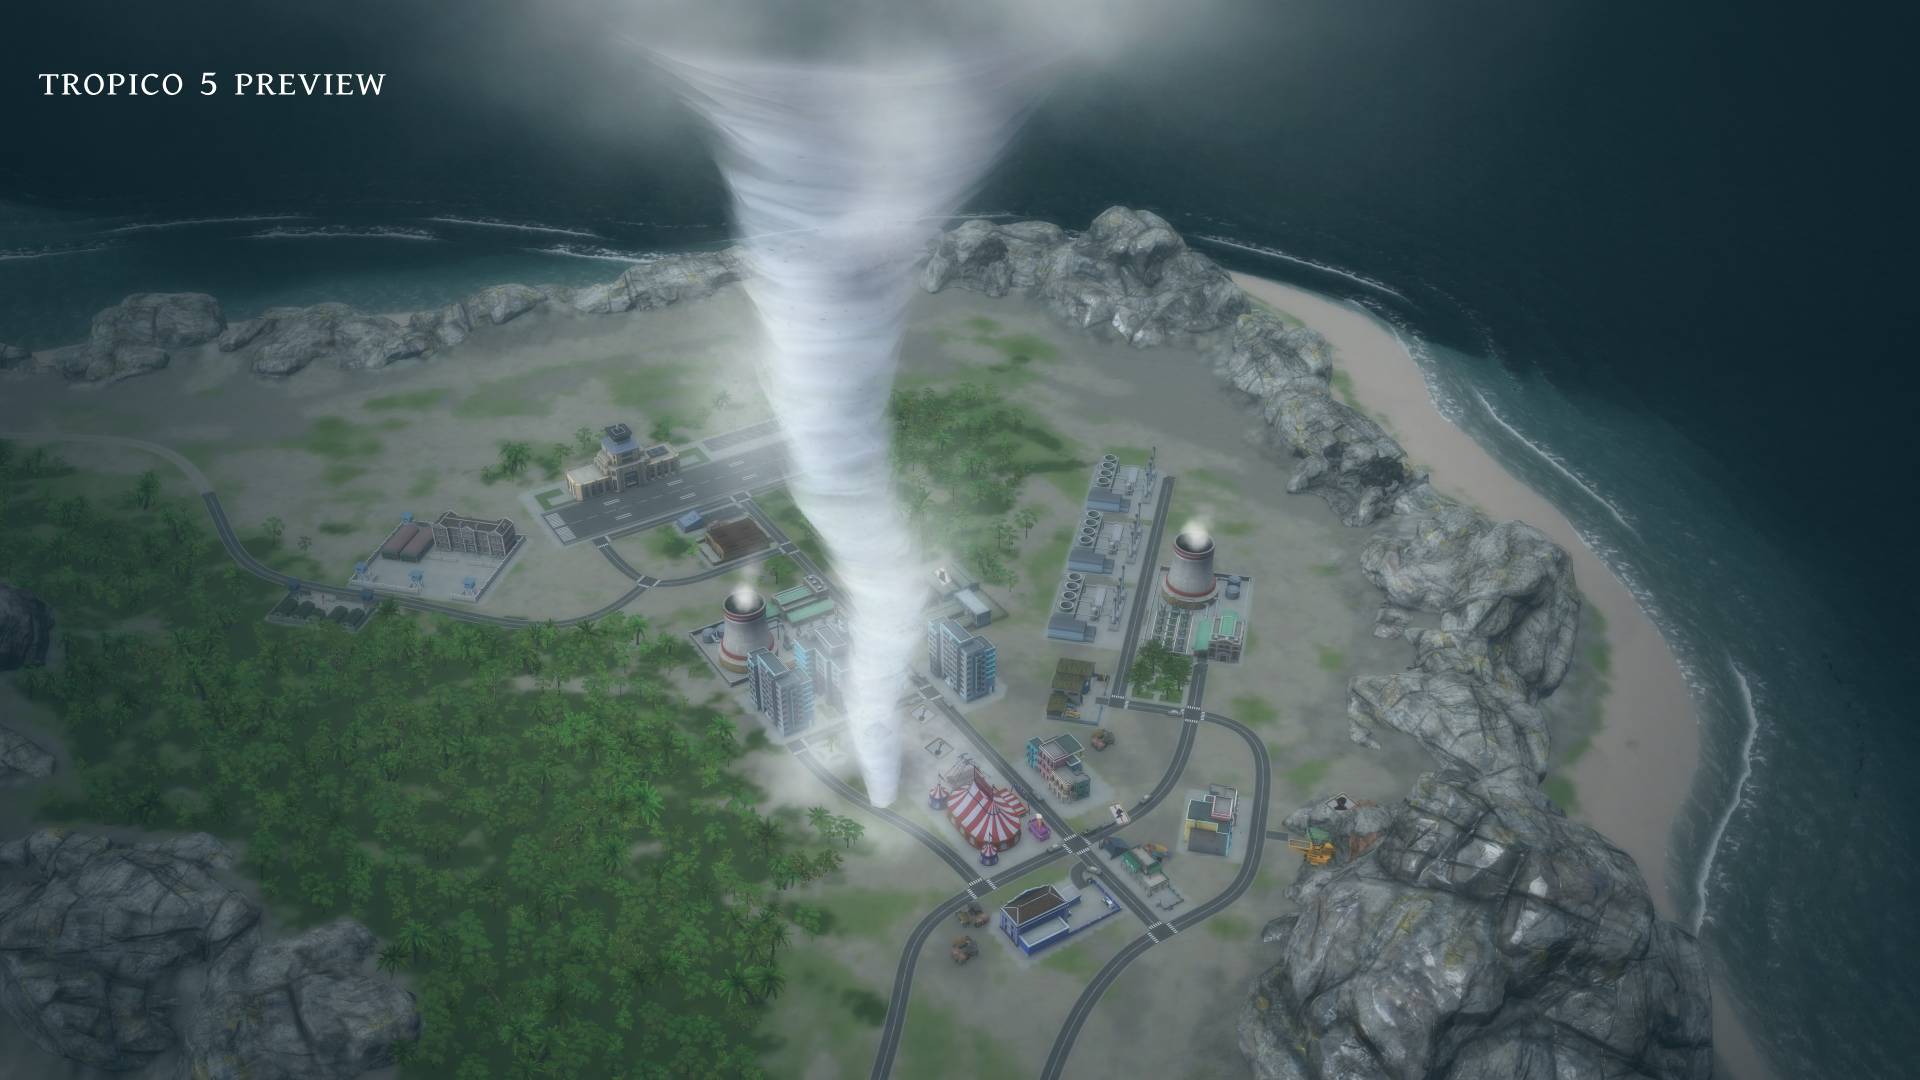 Tropico 5 für Mac und SteamOS angekündigt - Erscheint noch im September 2